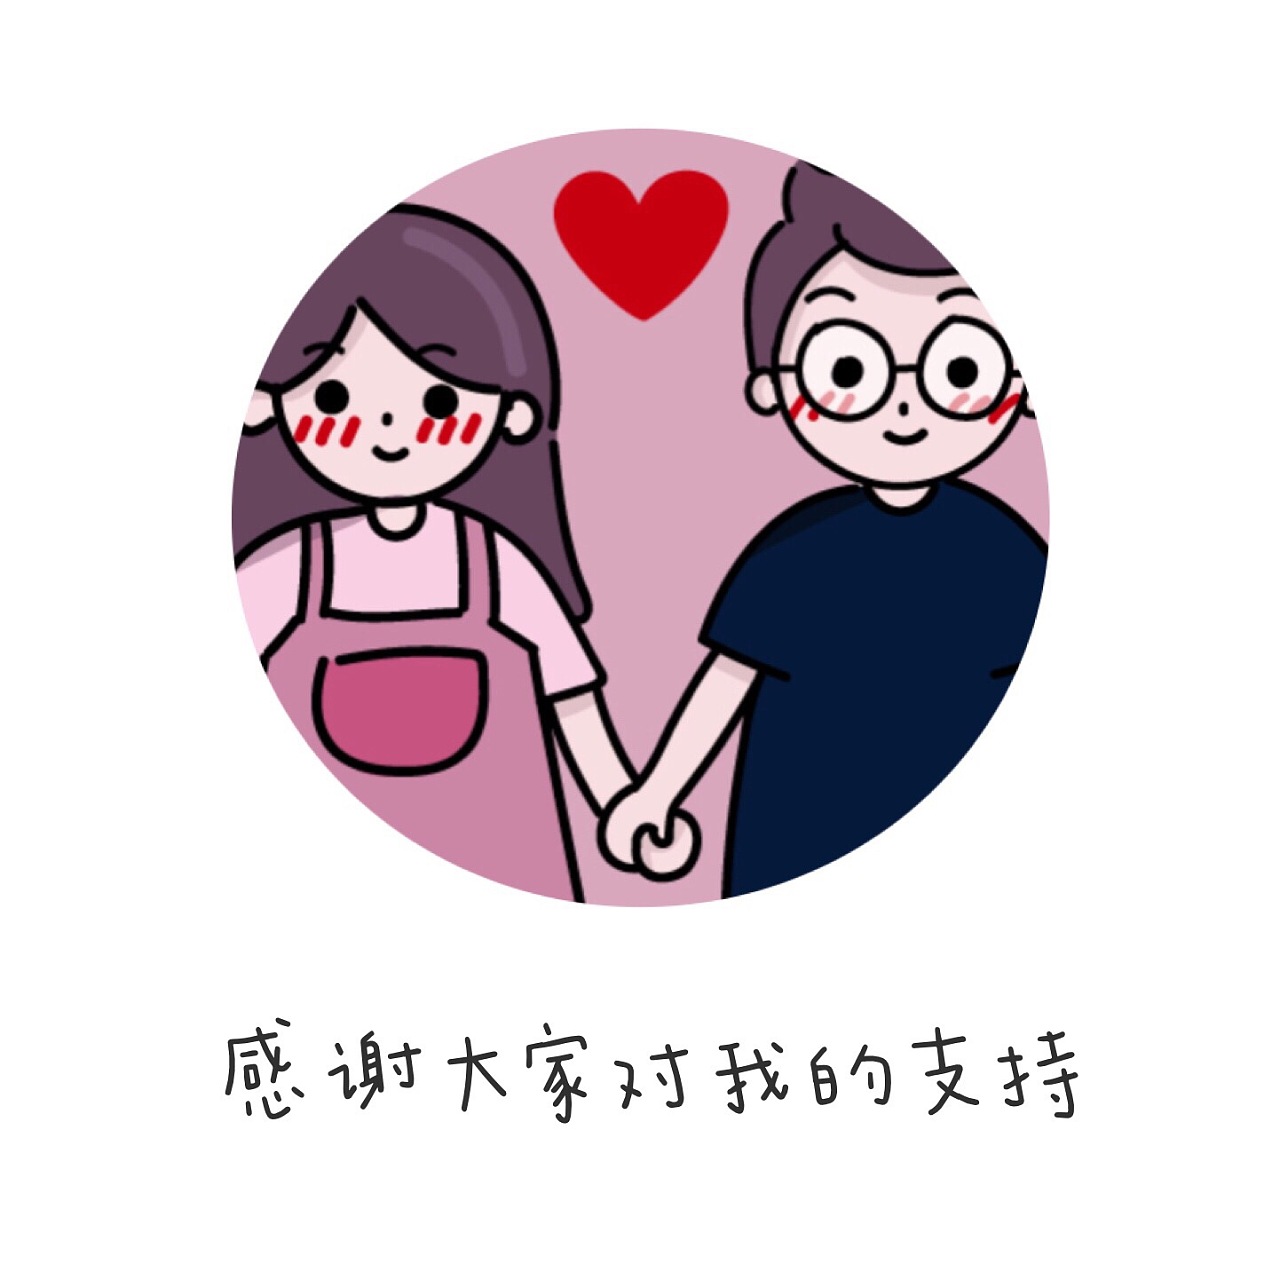 💑 情侣 Emoji图片下载: 高清大图、动画图像和矢量图形 | EmojiAll